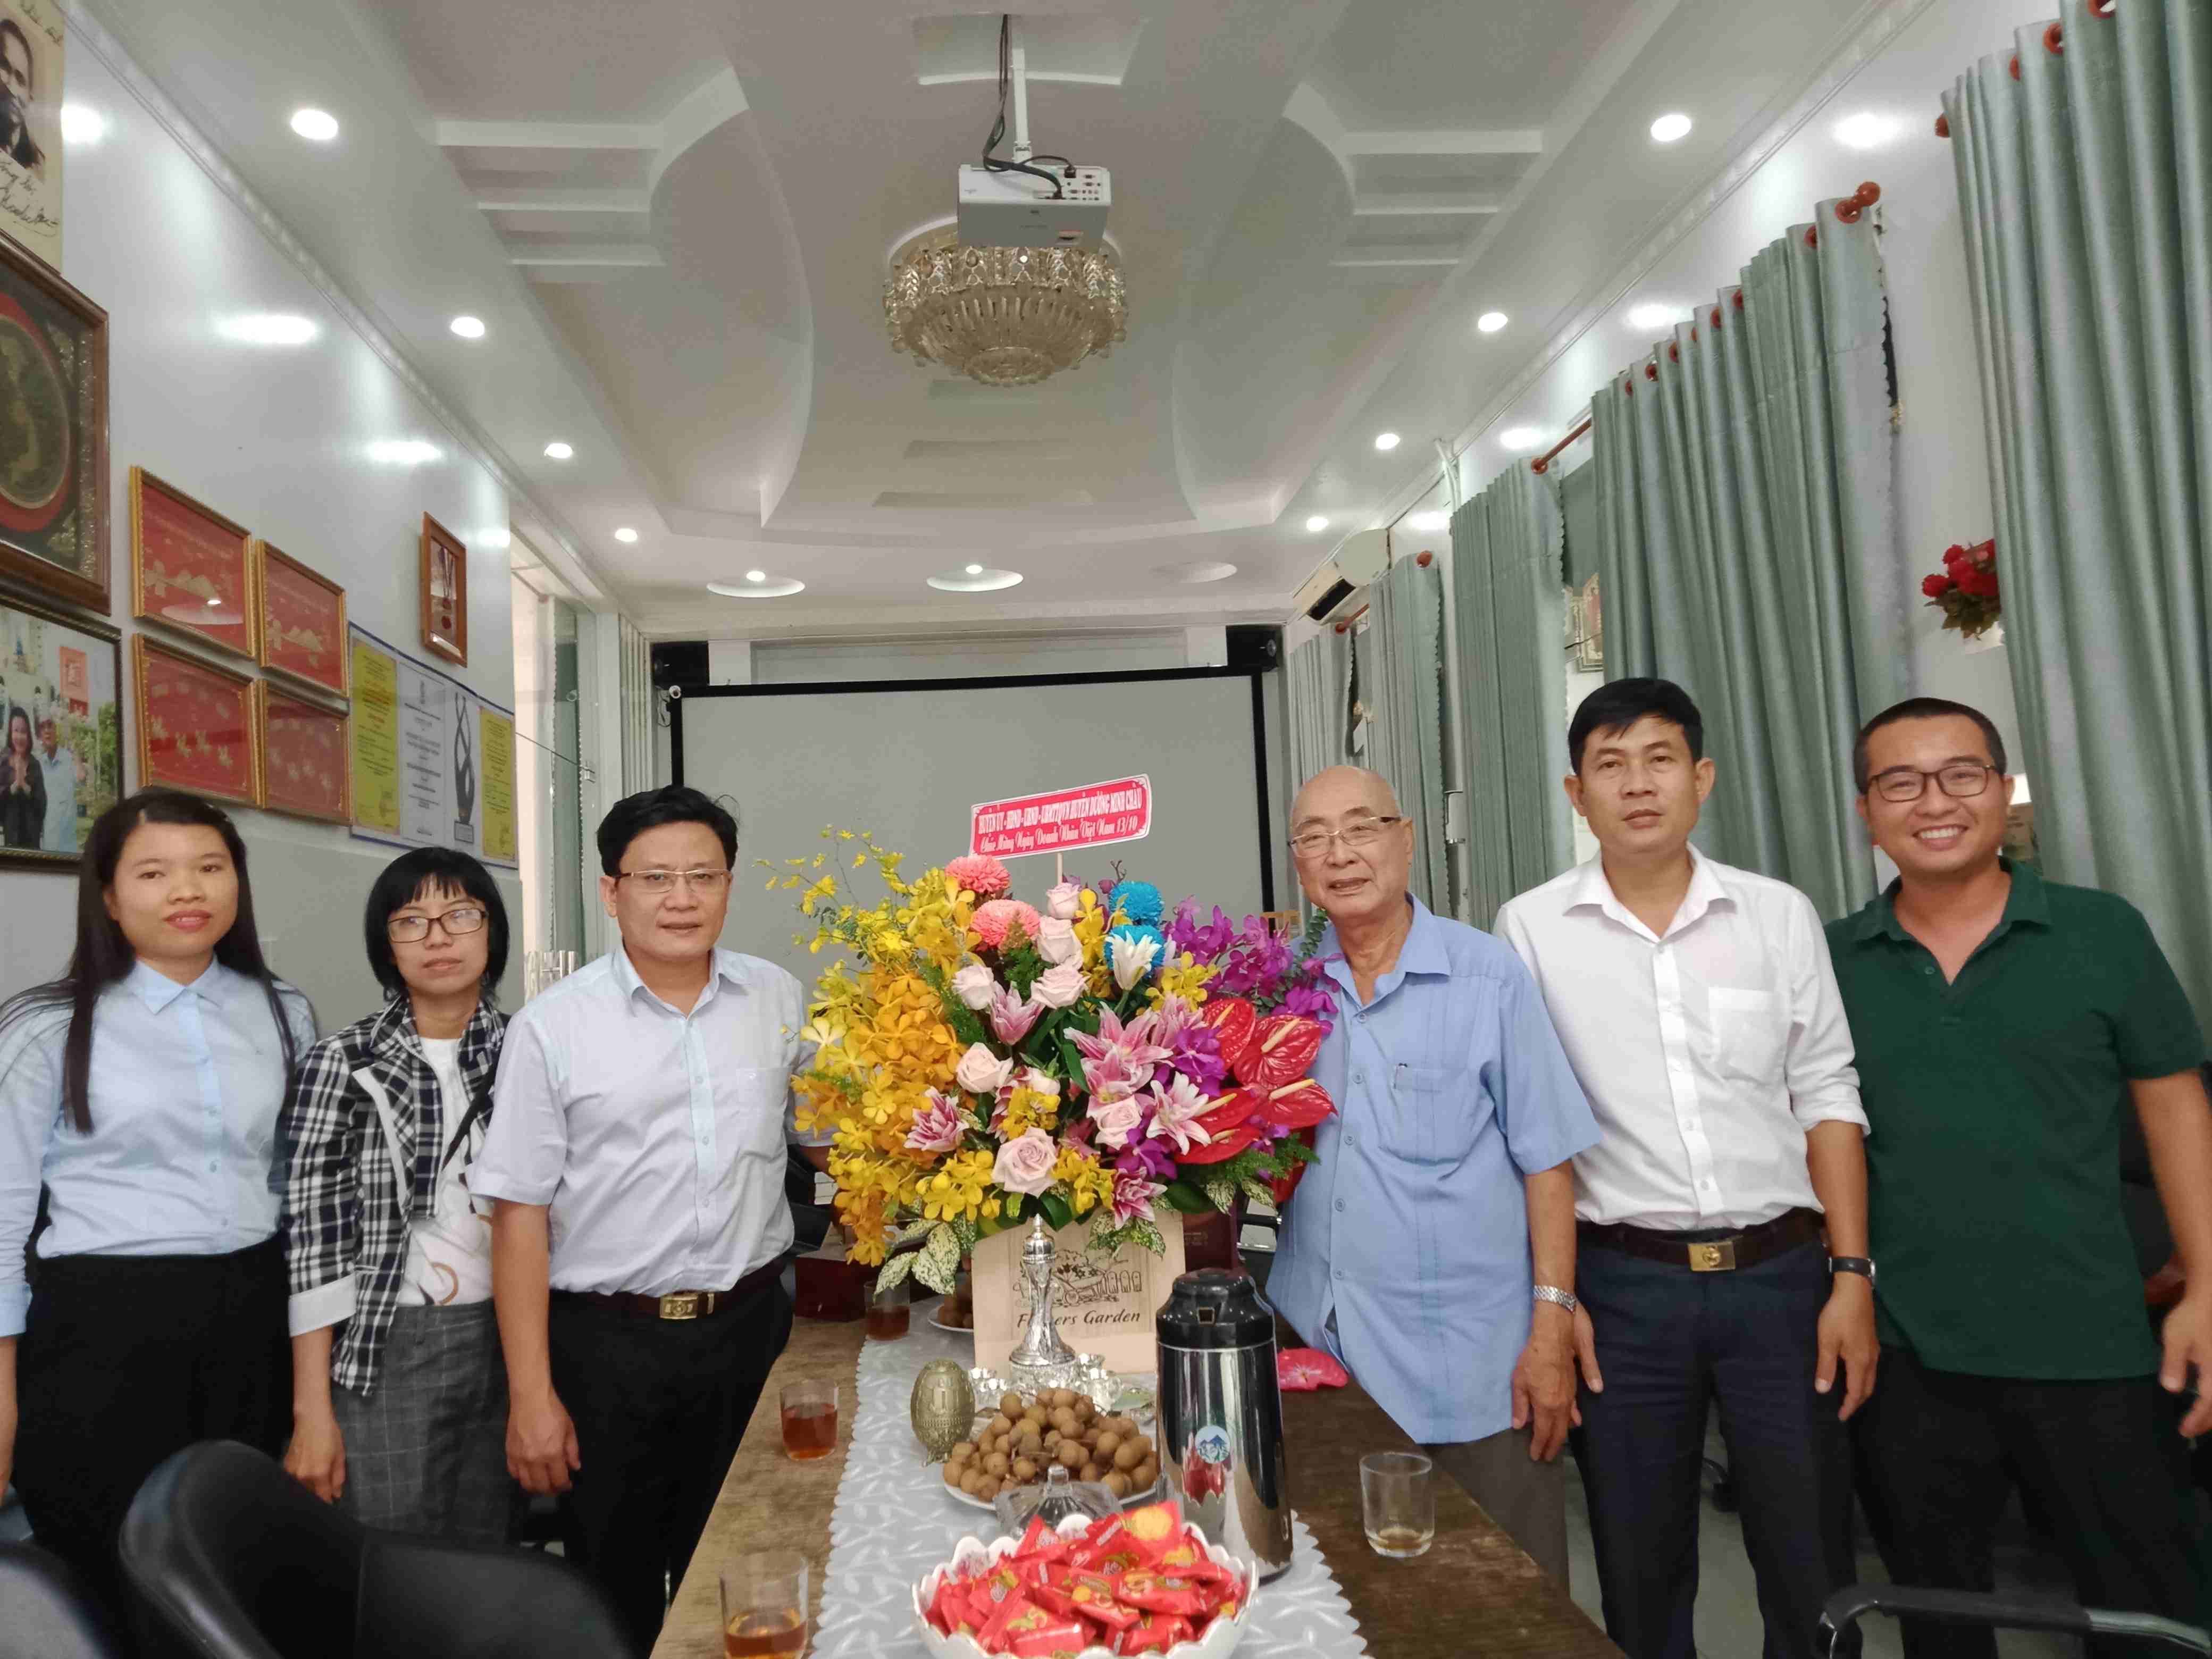 Ngày 13.10, huyện Dương Minh Châu tổ chức đoàn đi thăm các doanh nghiệp nhân ngày Doanh nhân Việt Nam 13.10